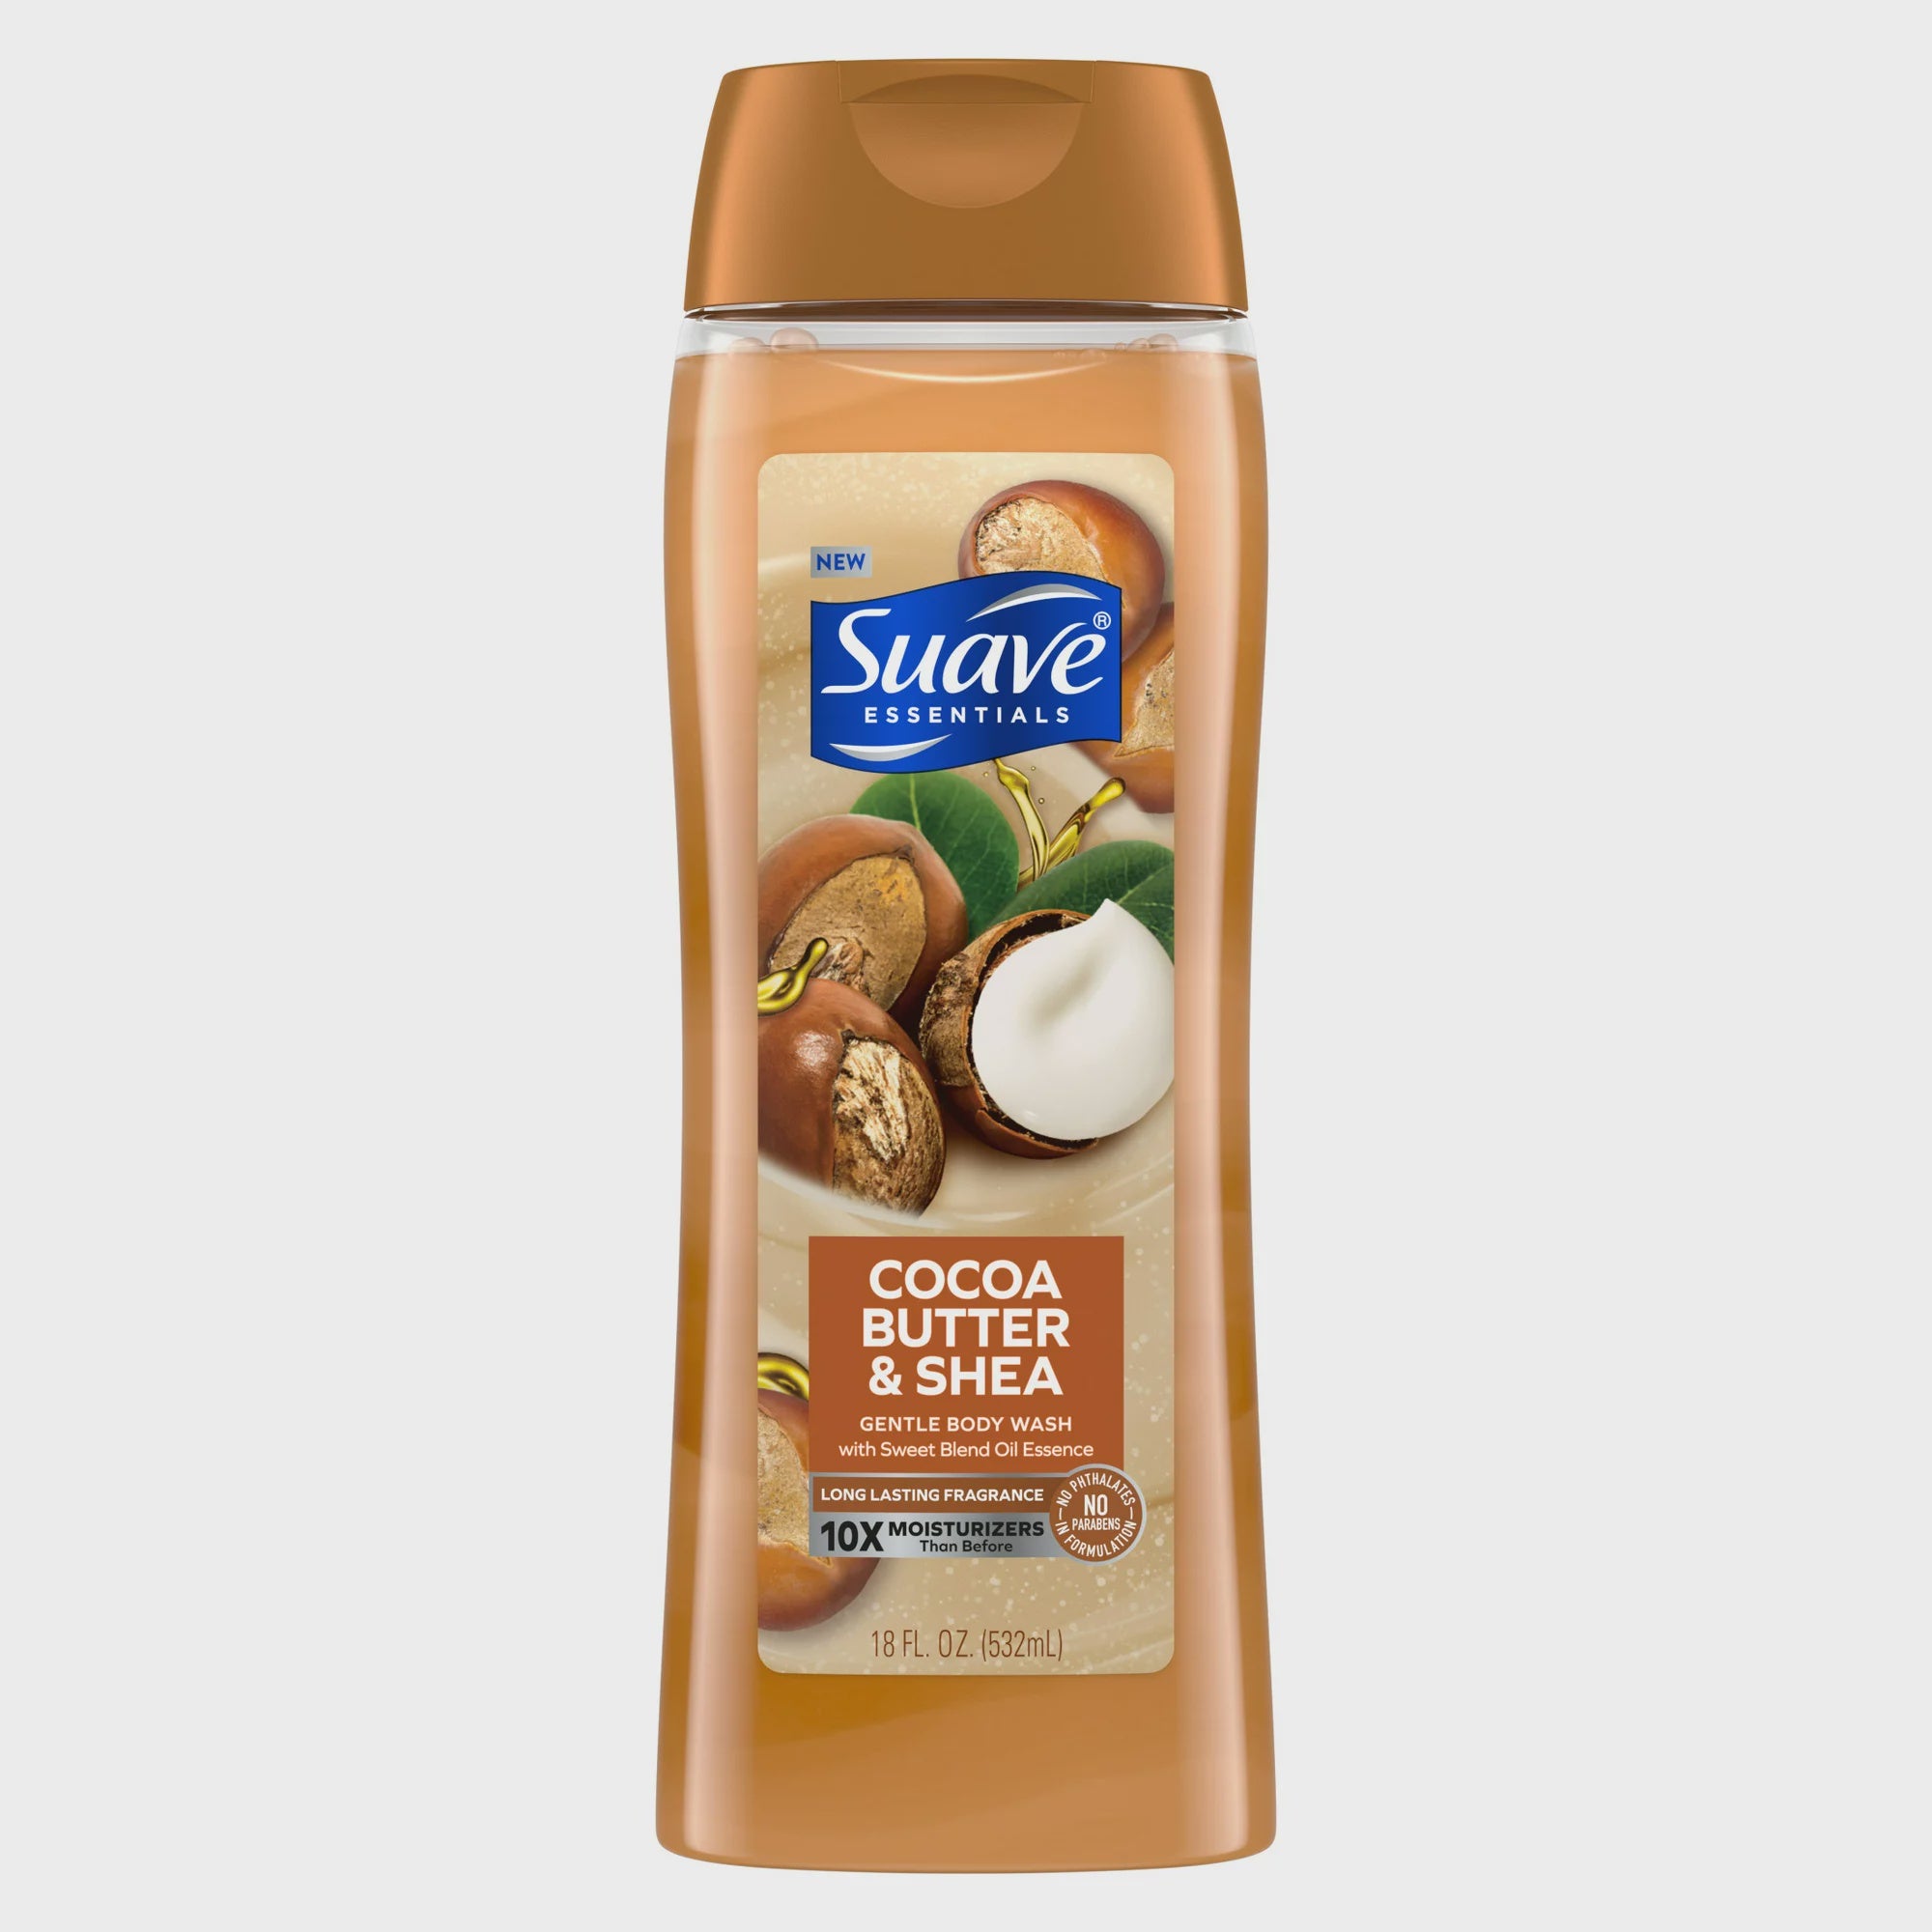 Suave Cocoa Butter & Shea Body Wash 18oz